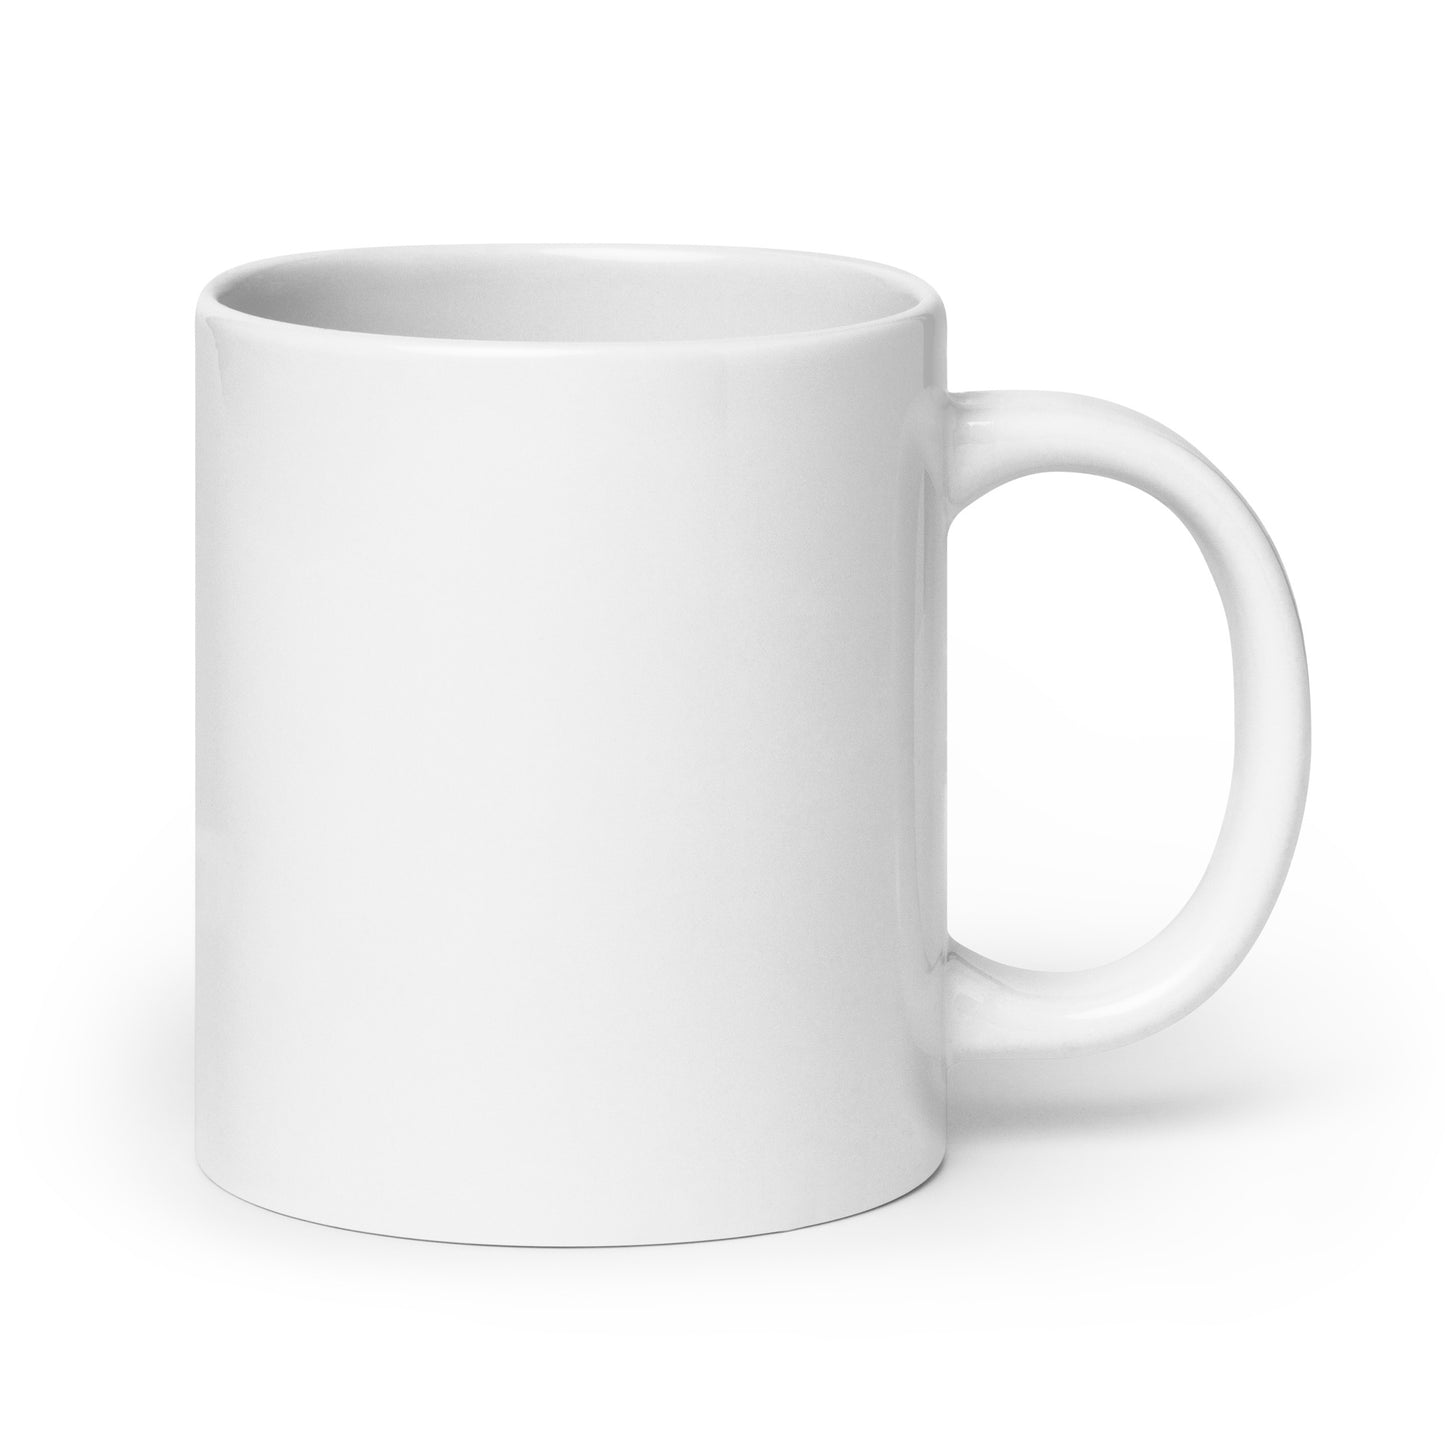 The Randall Series Warning White Glossy Mug